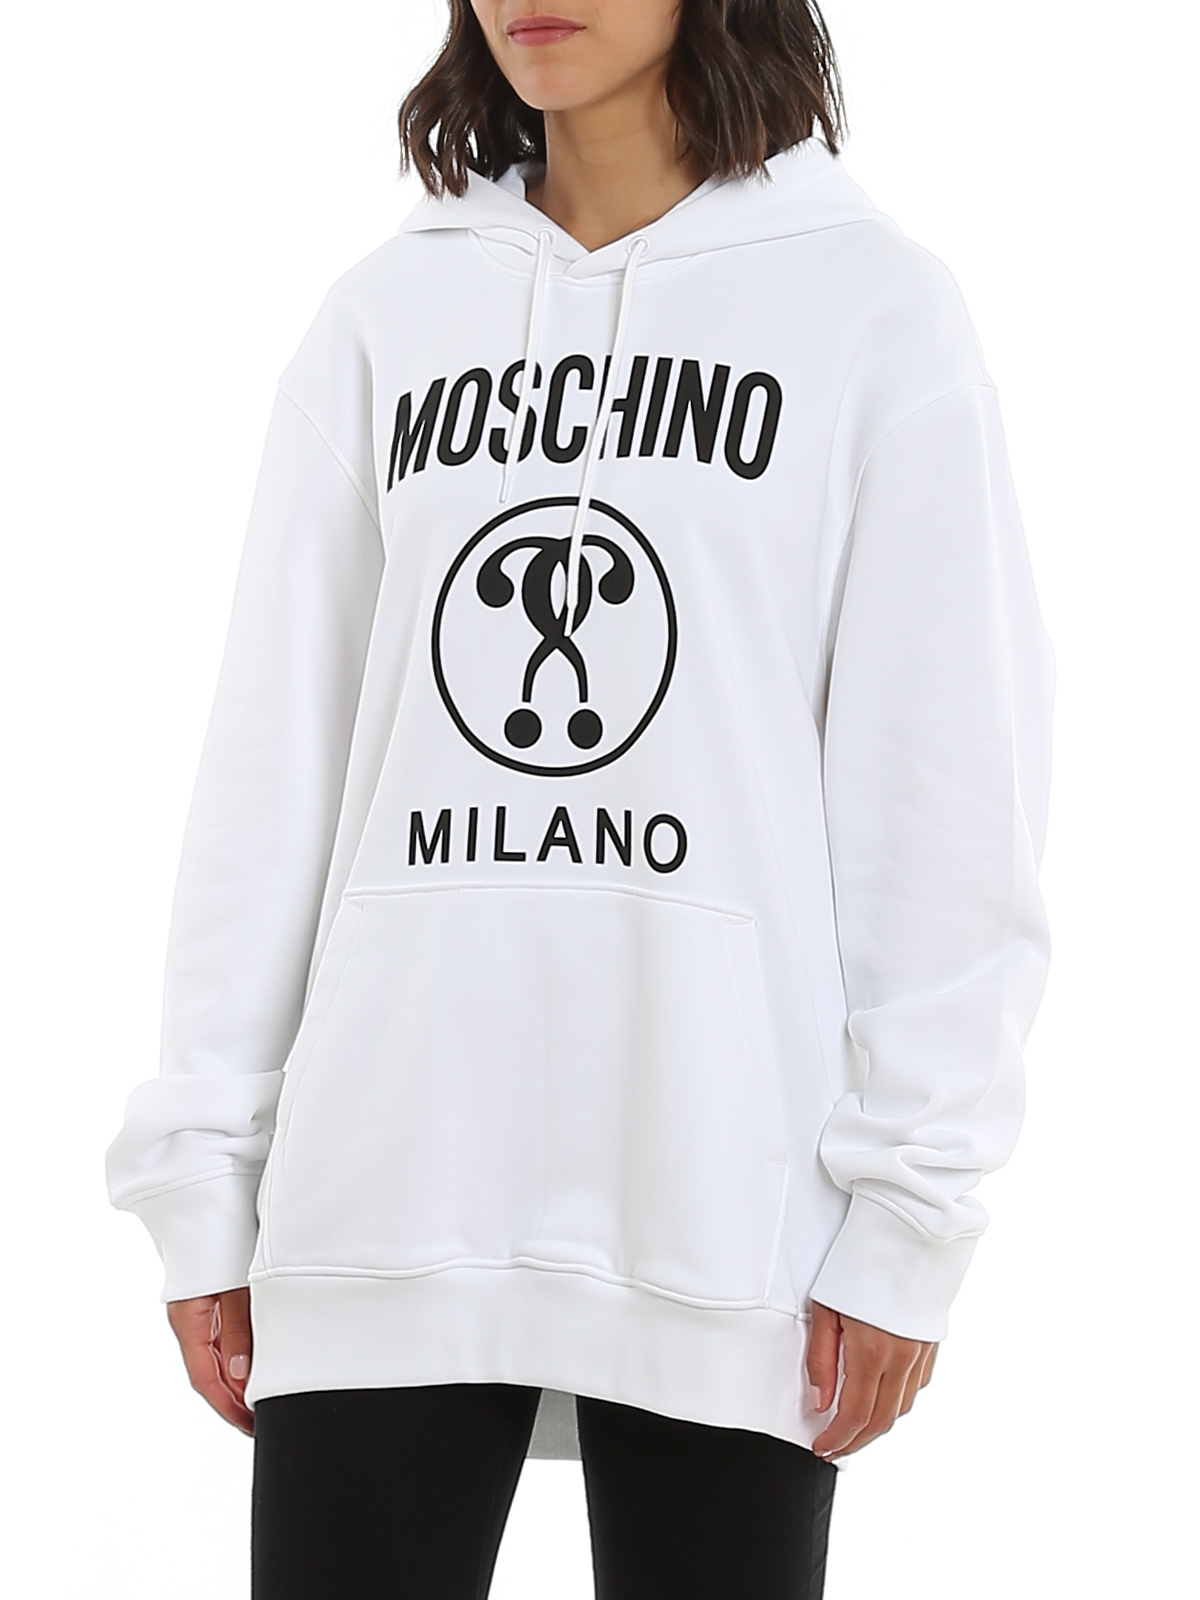 moschino hoodie price